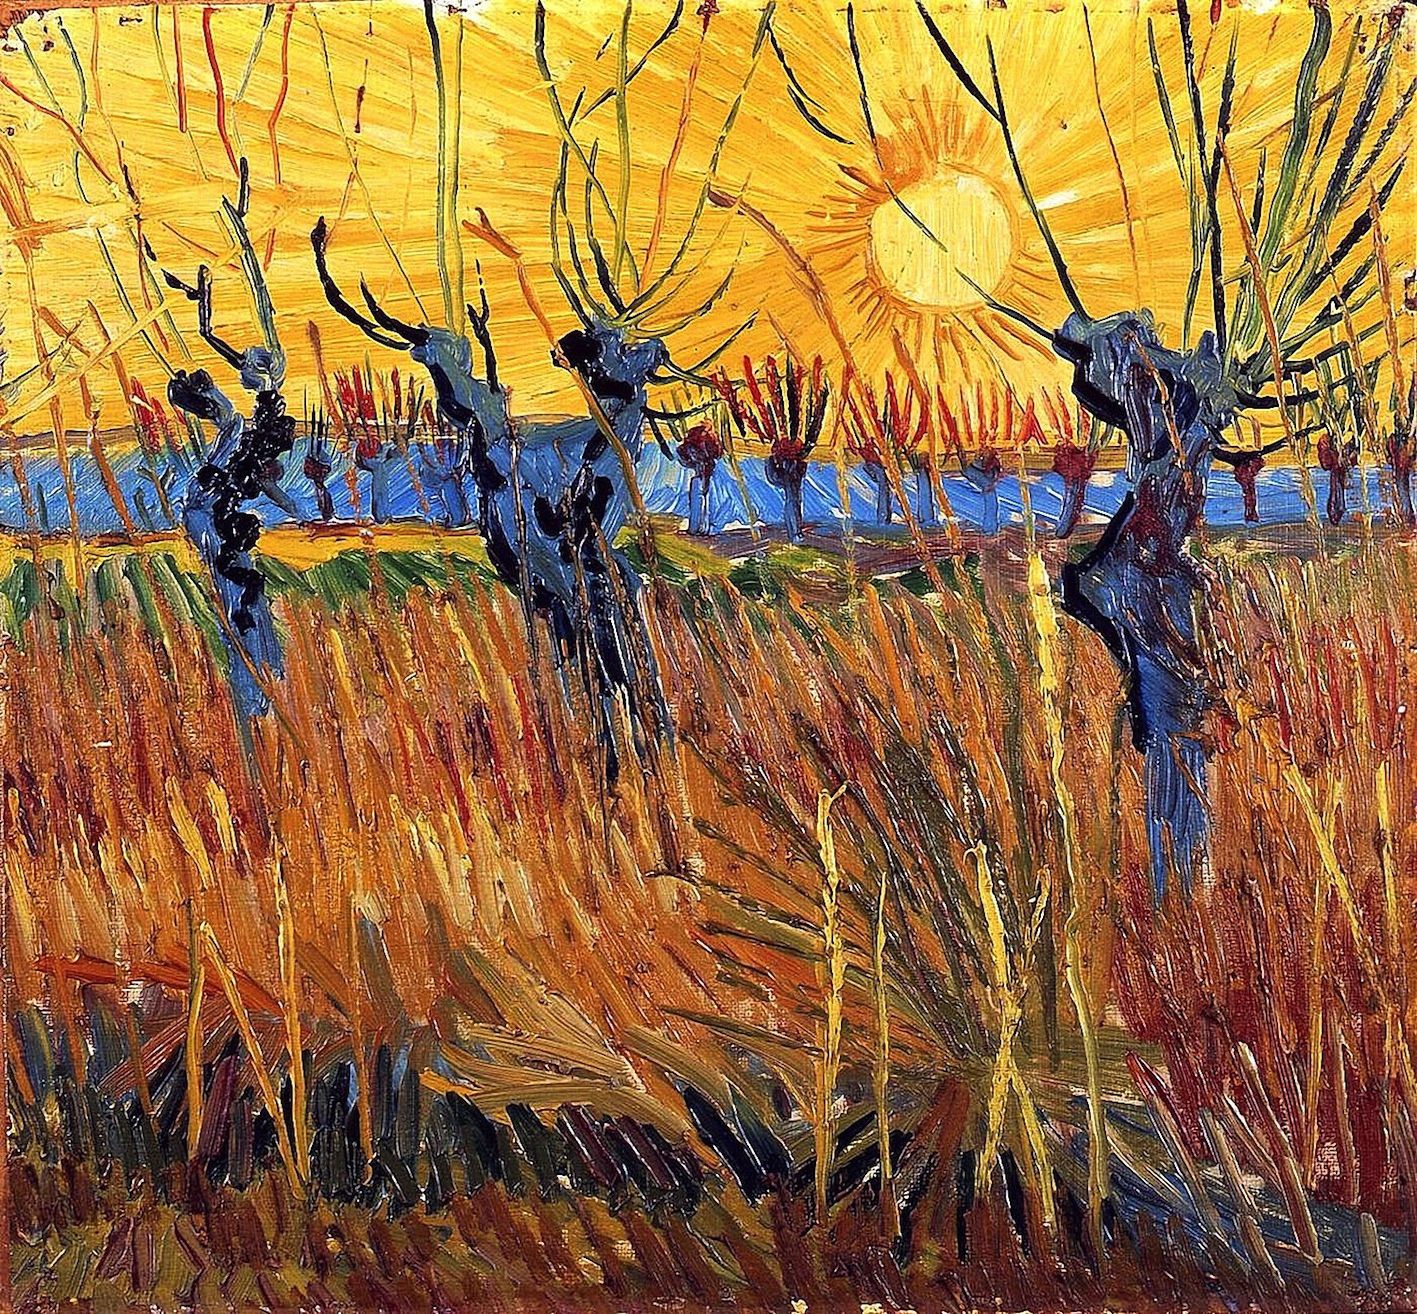 Quelques tableaux de Van Gogh pour le dernier #lundisoleil jaune de juin -  Dans la Bulle de Manou